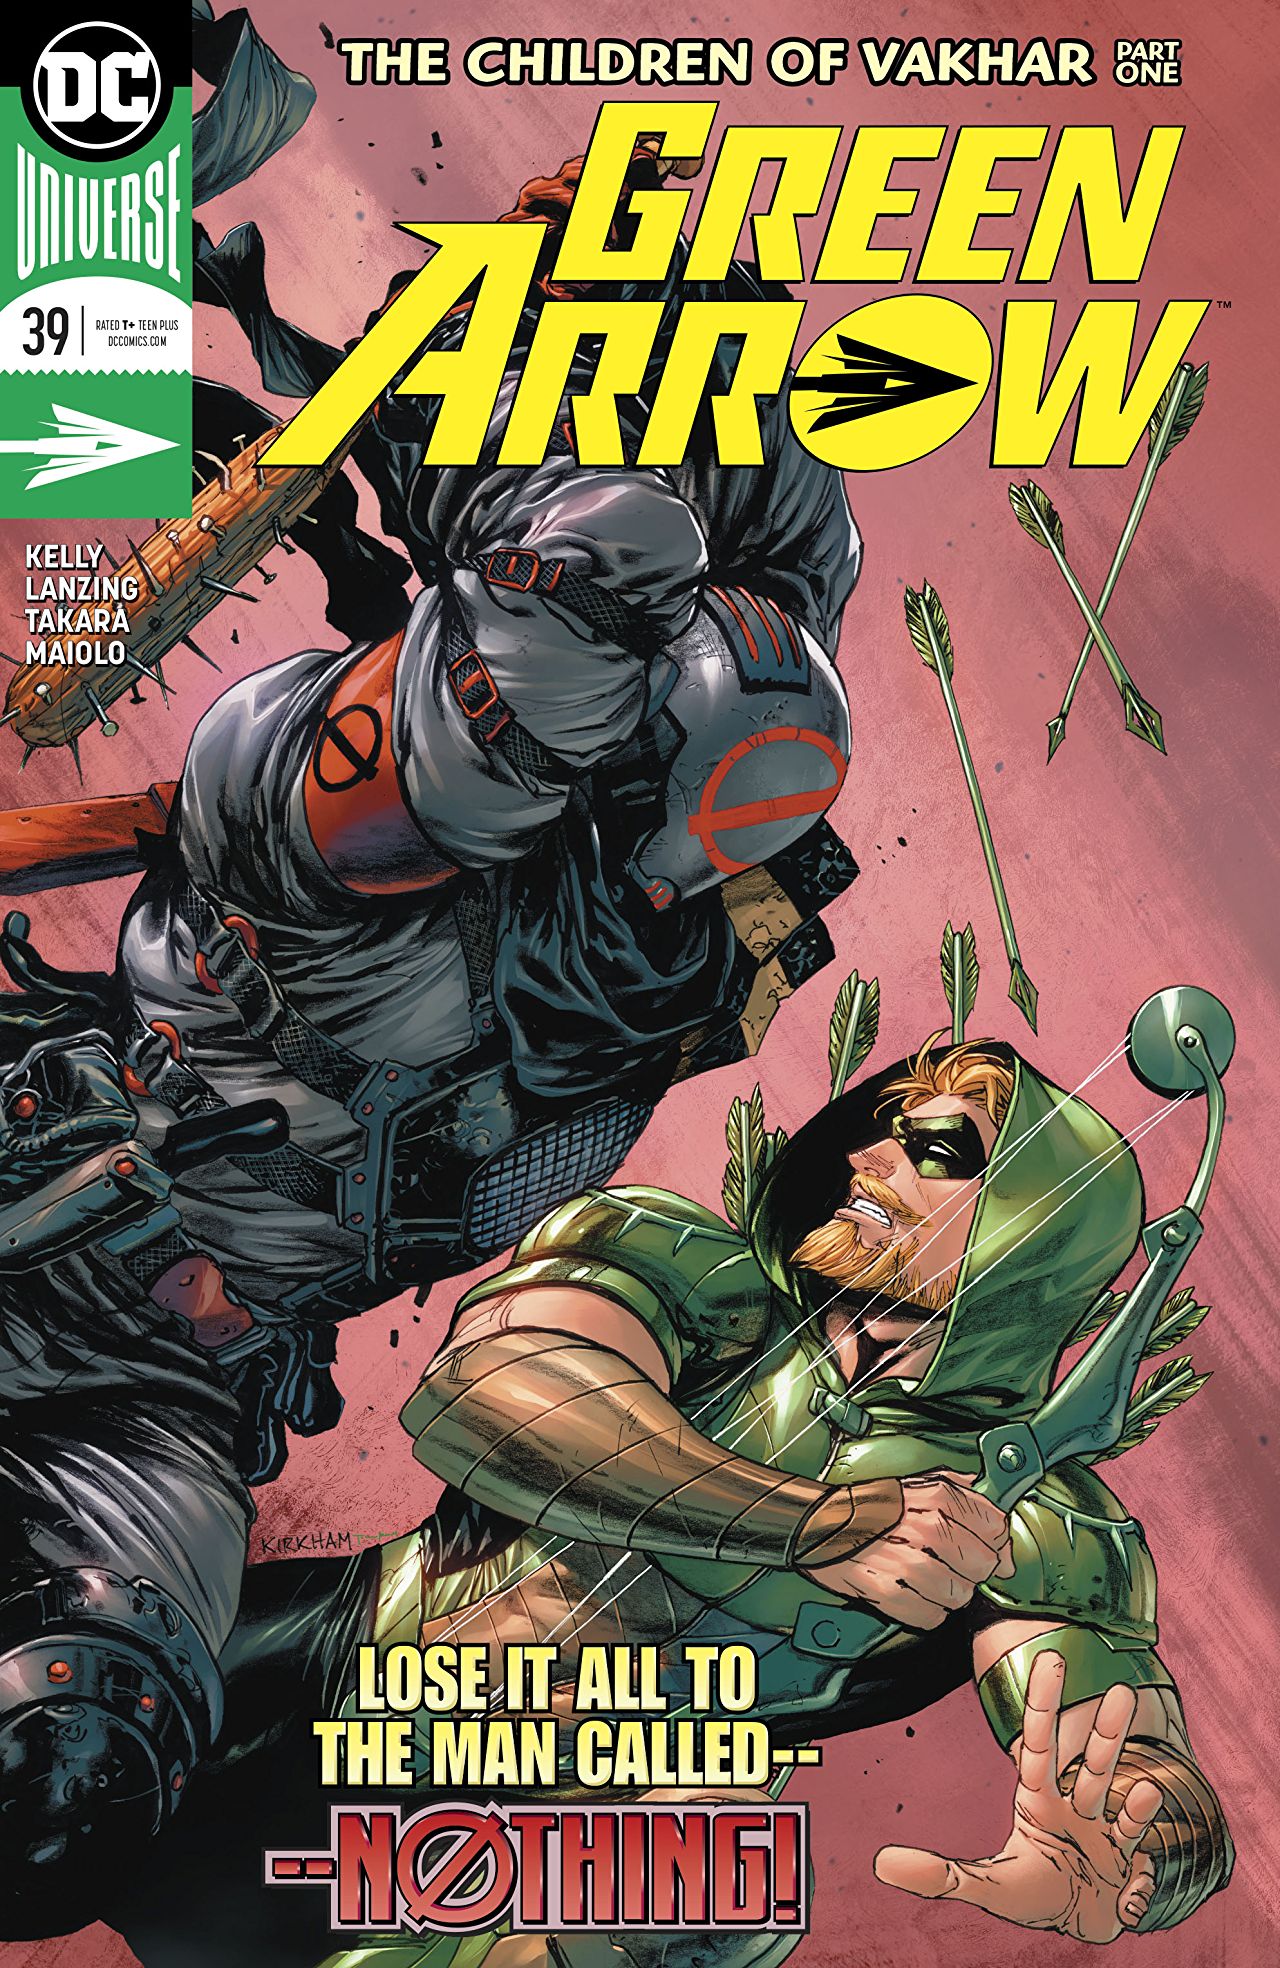 Dar Dificil Crónica Green Arrow #39 review — You Don't Read Comics